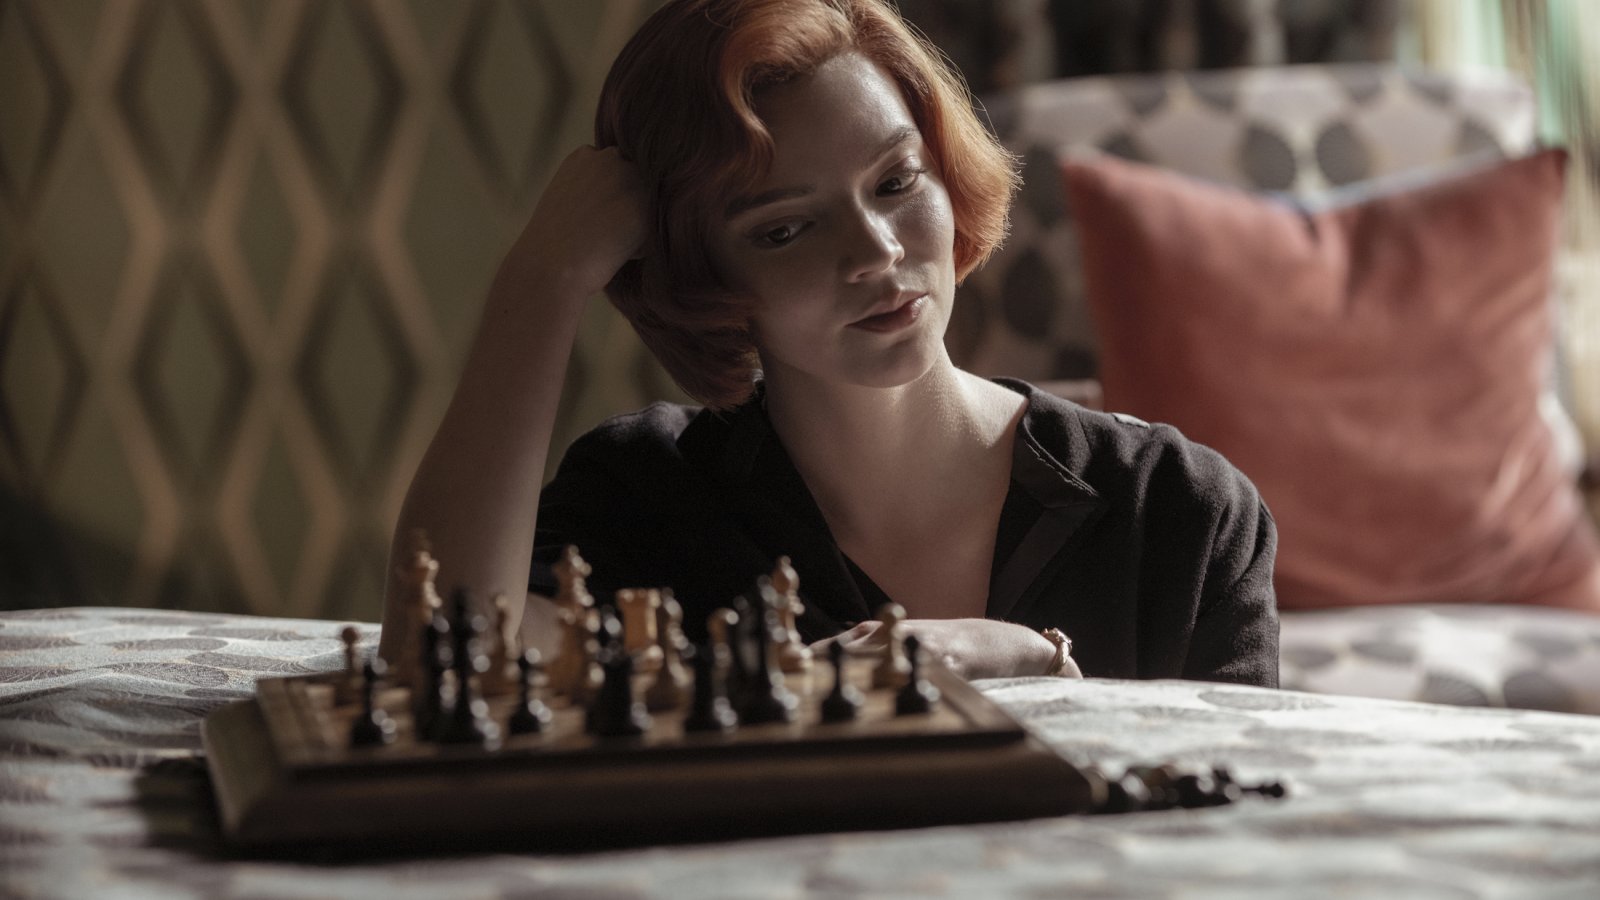 La regina degli scacchi: un post di Anya Taylor-Joy sembra confermare la stagione 2?